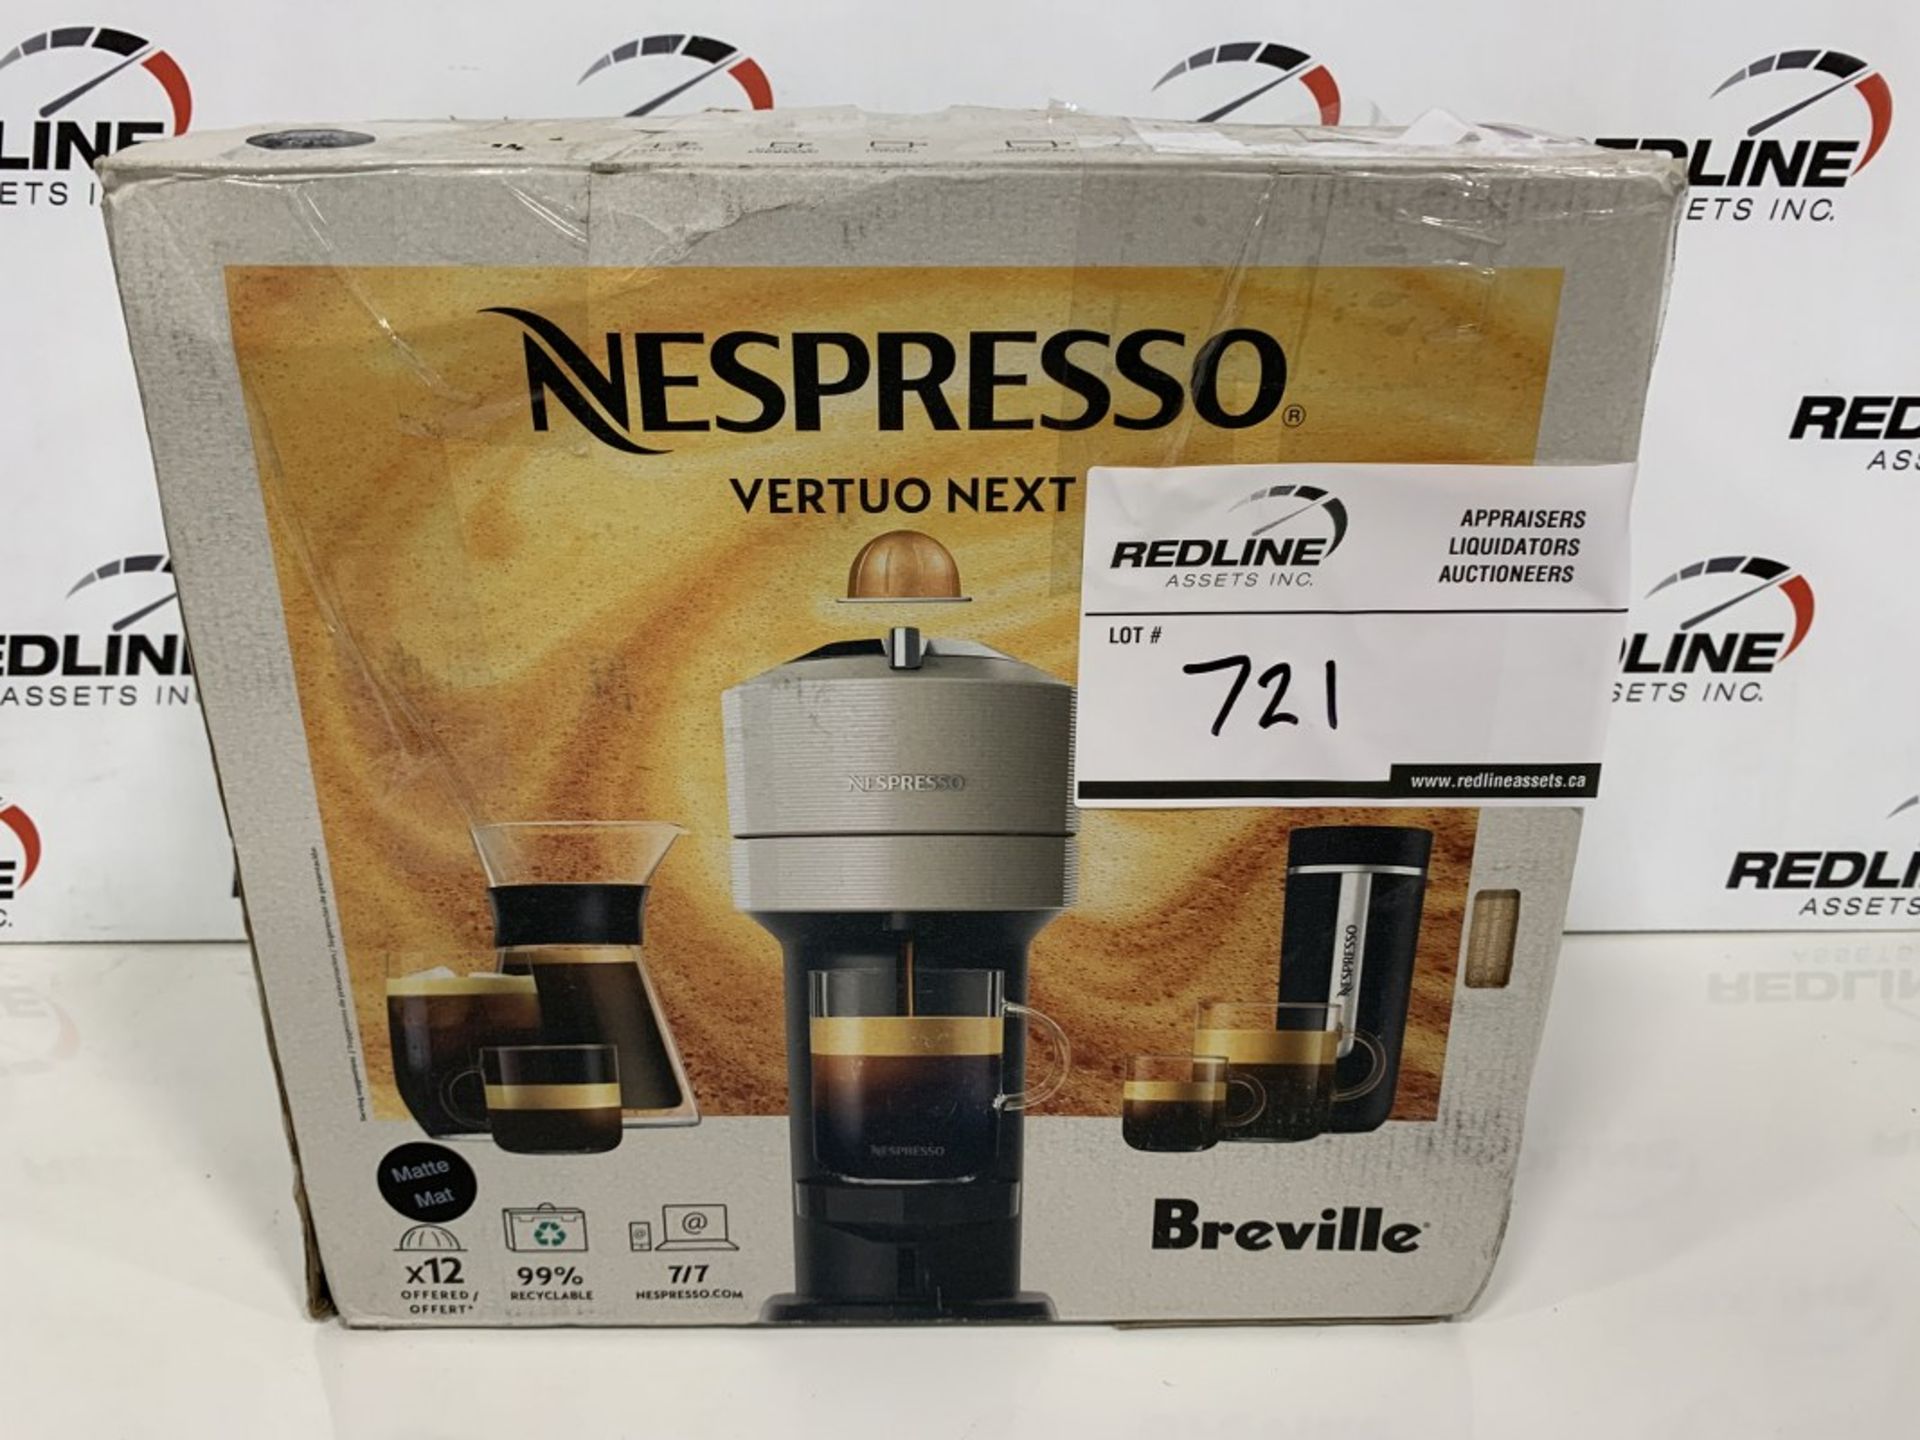 BREVILLE - NESPRESSO - VERTUO NEXT COFFEE MACHINE